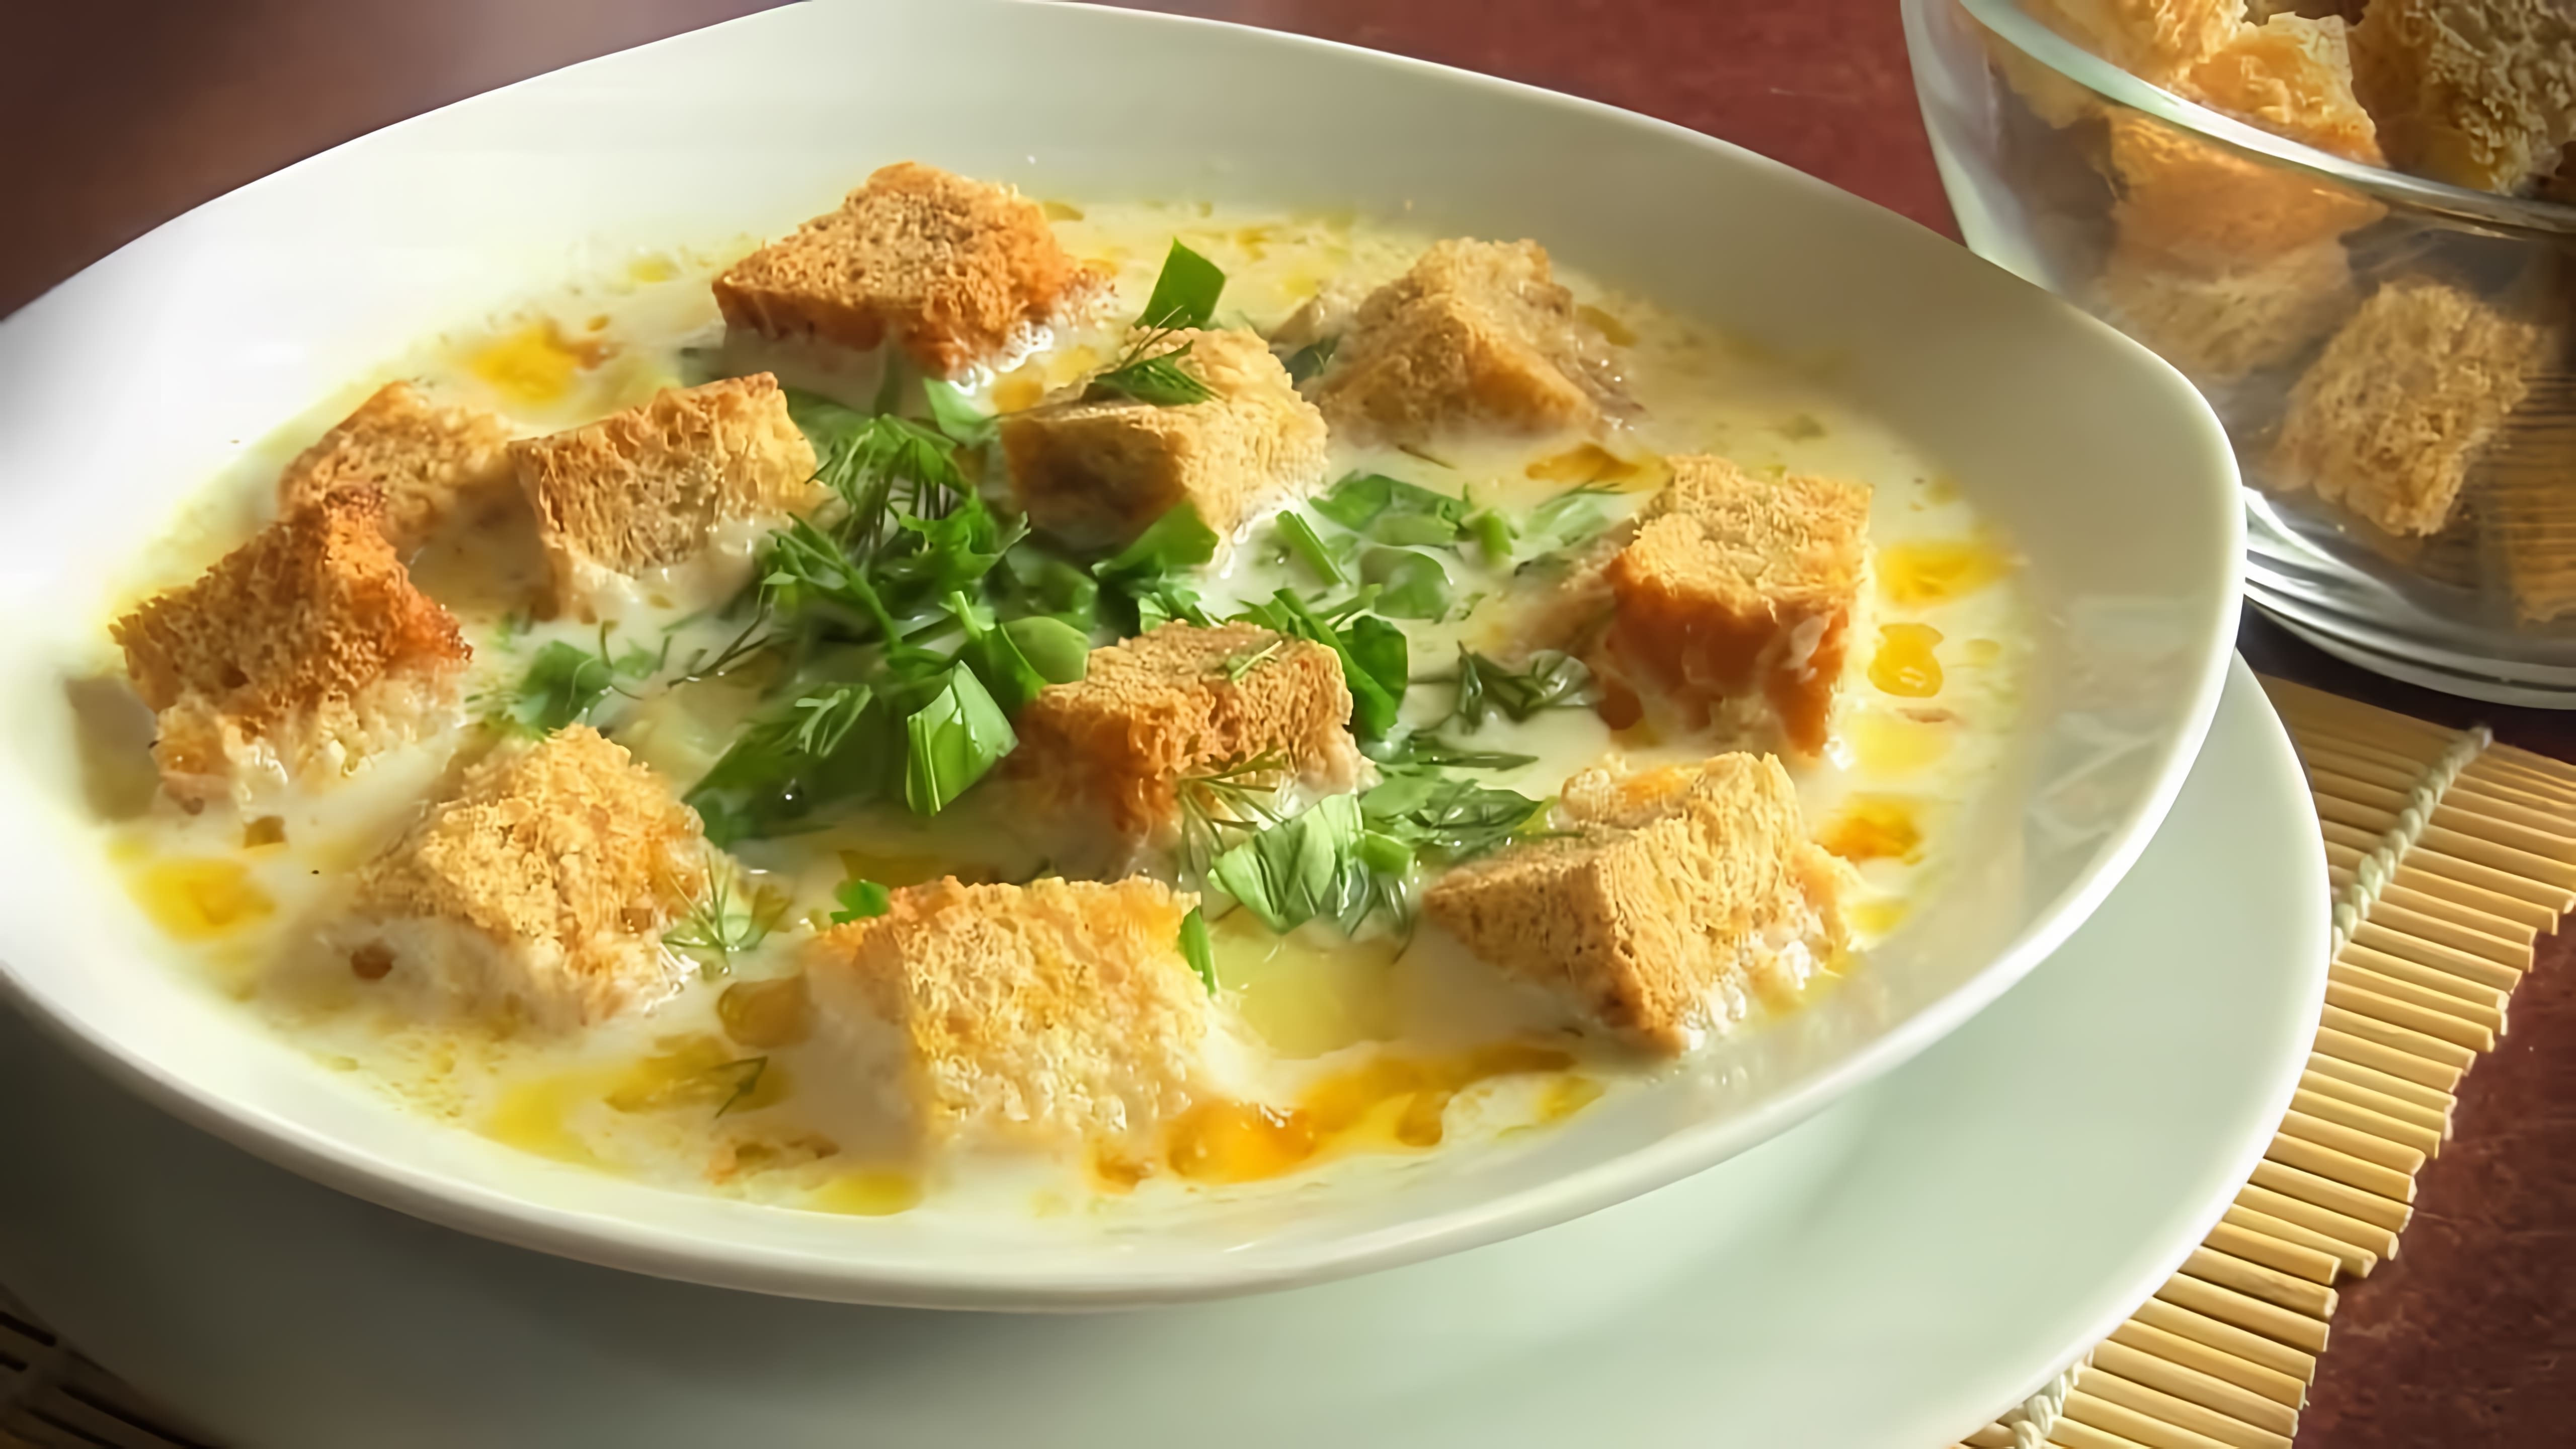 В этом видео демонстрируется рецепт приготовления сырного супа с курицей и плавленным сыром